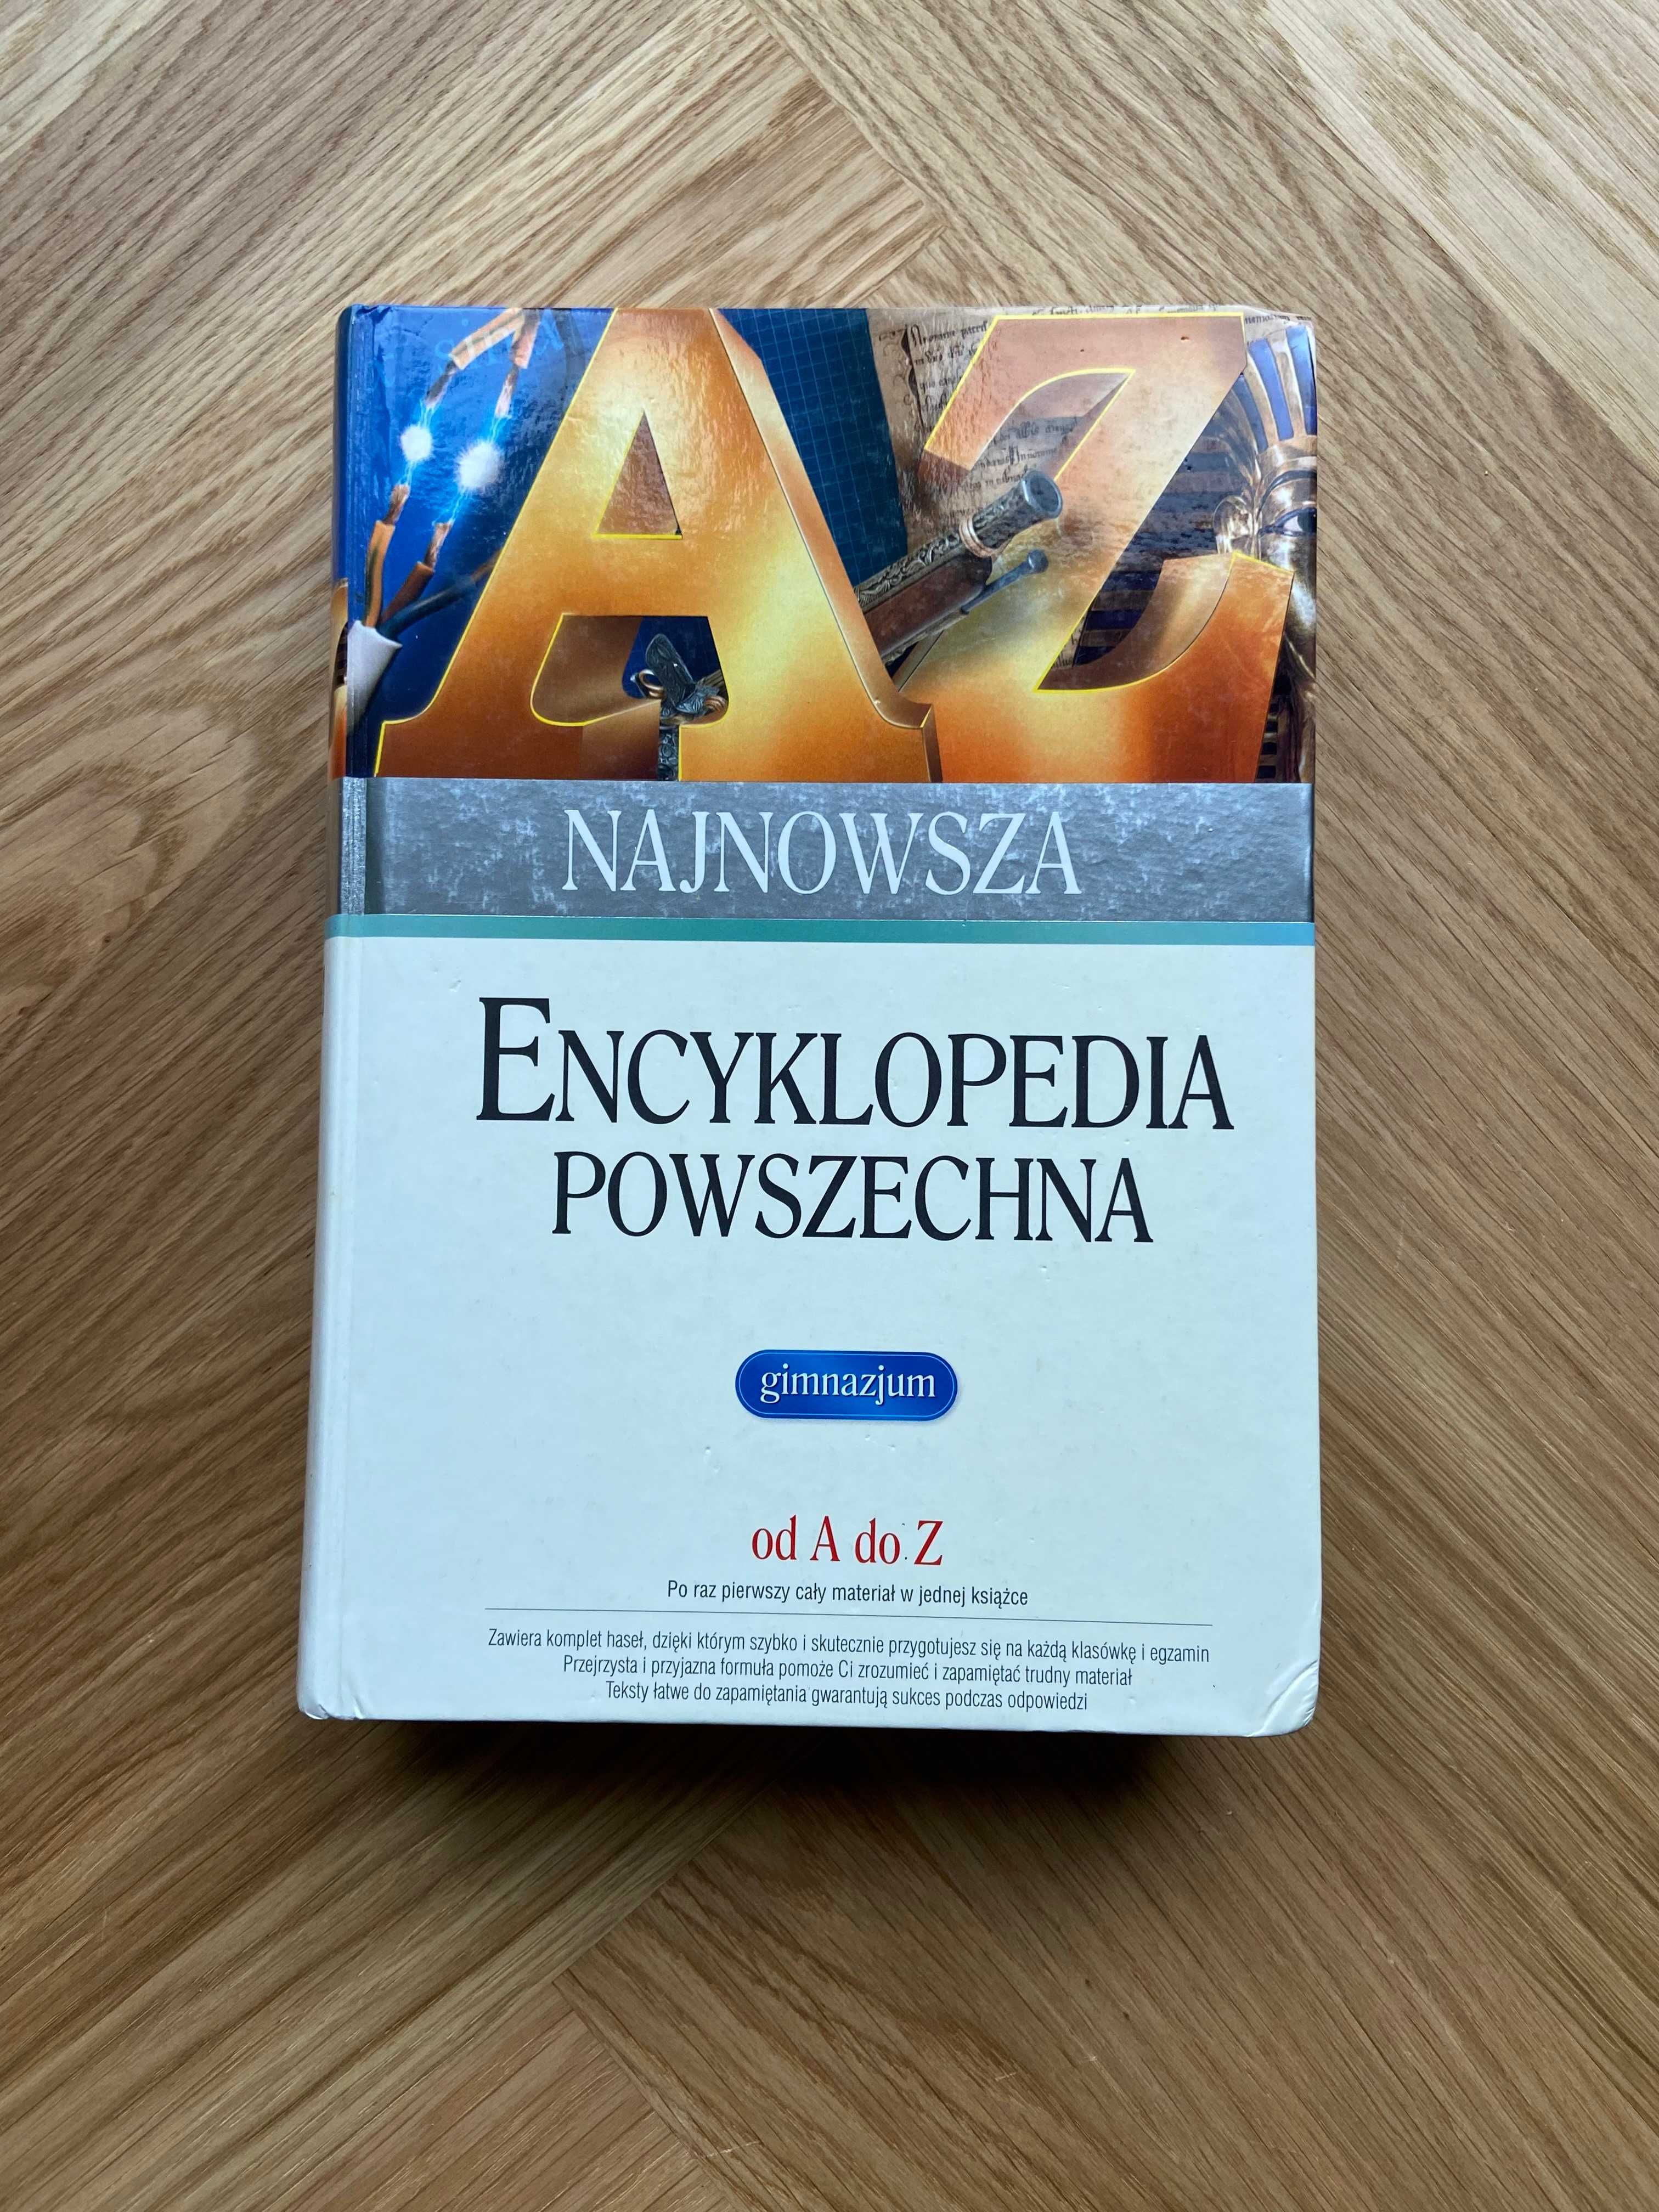 Najnowsza Encyklopedia Powszechna od A do Z, szkoła podstawowa